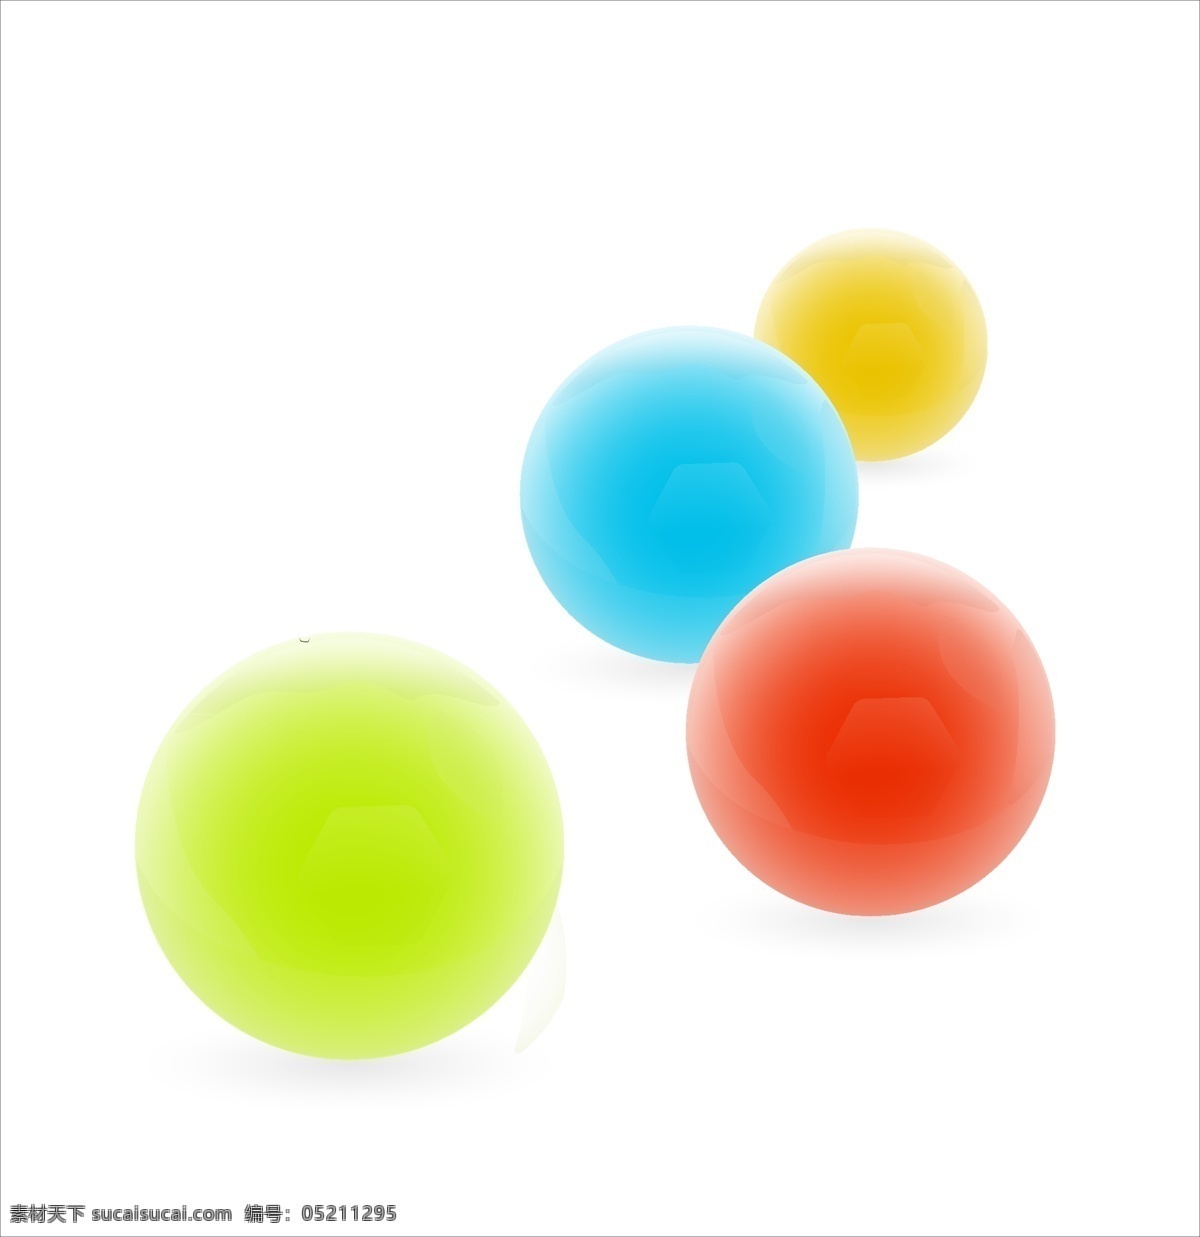 彩球矢量素材 彩色 球体 简单 矢量素材 设计素材